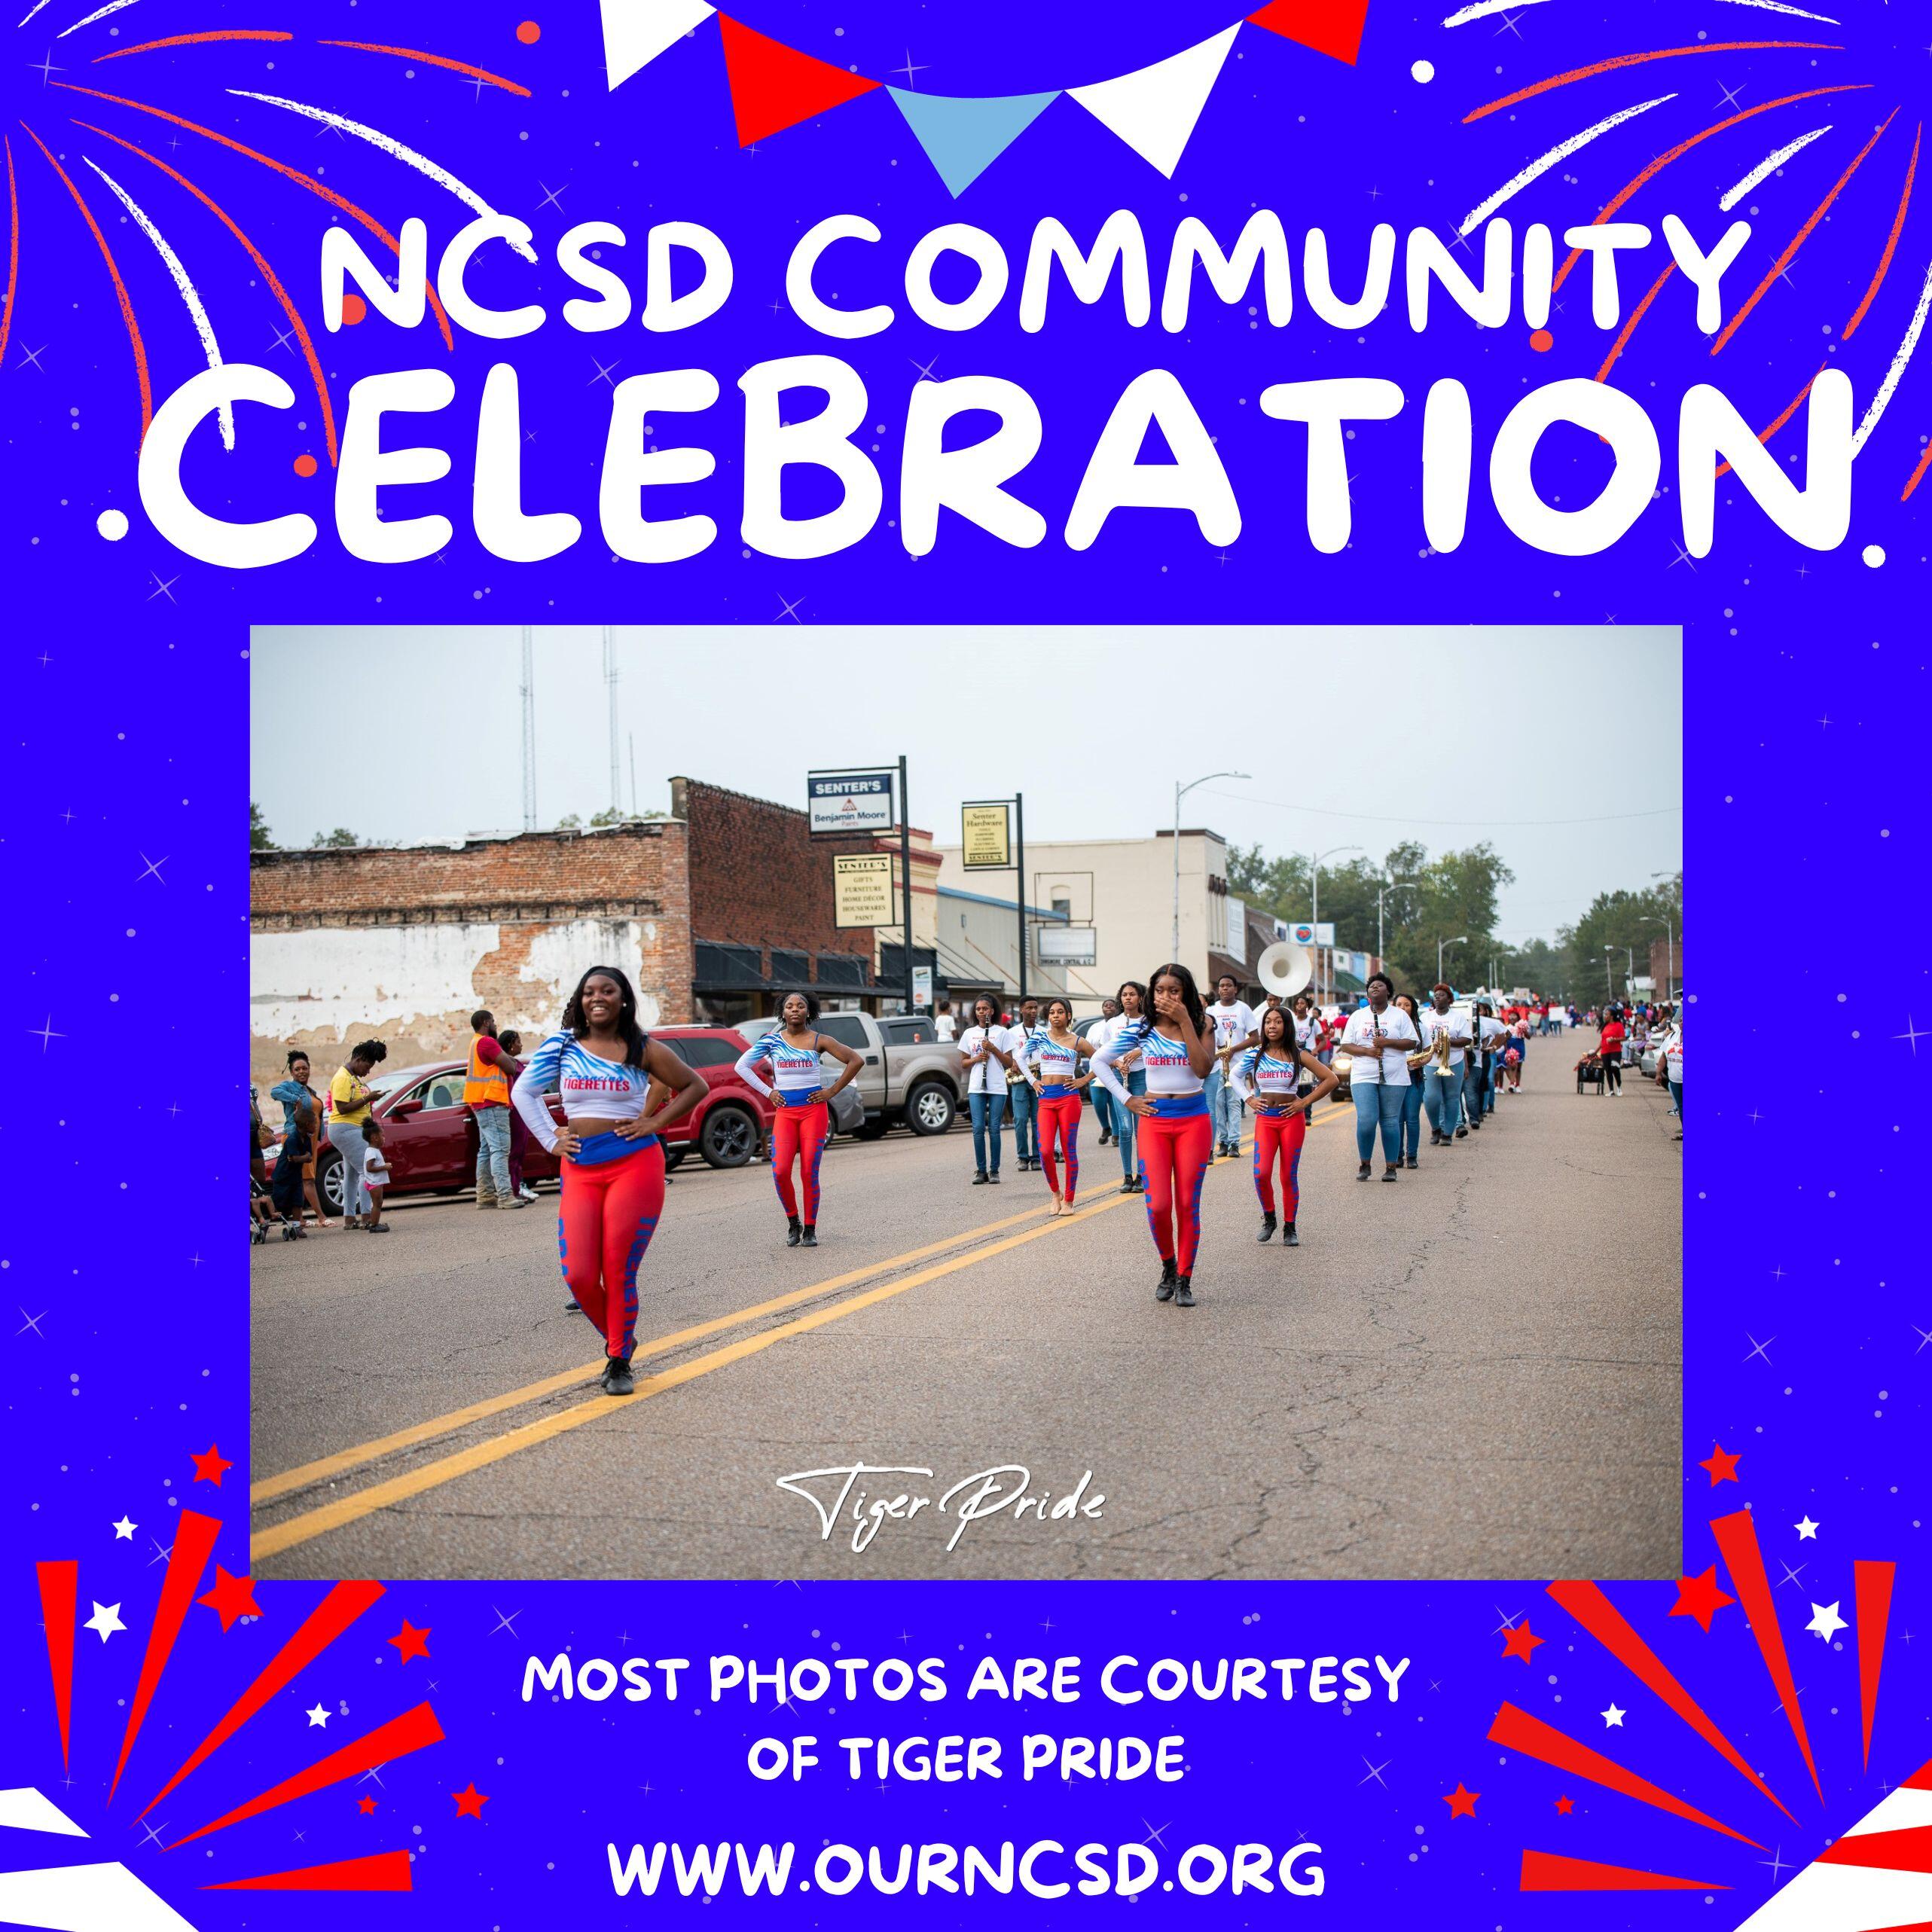 NCSD Community Celebration flyer